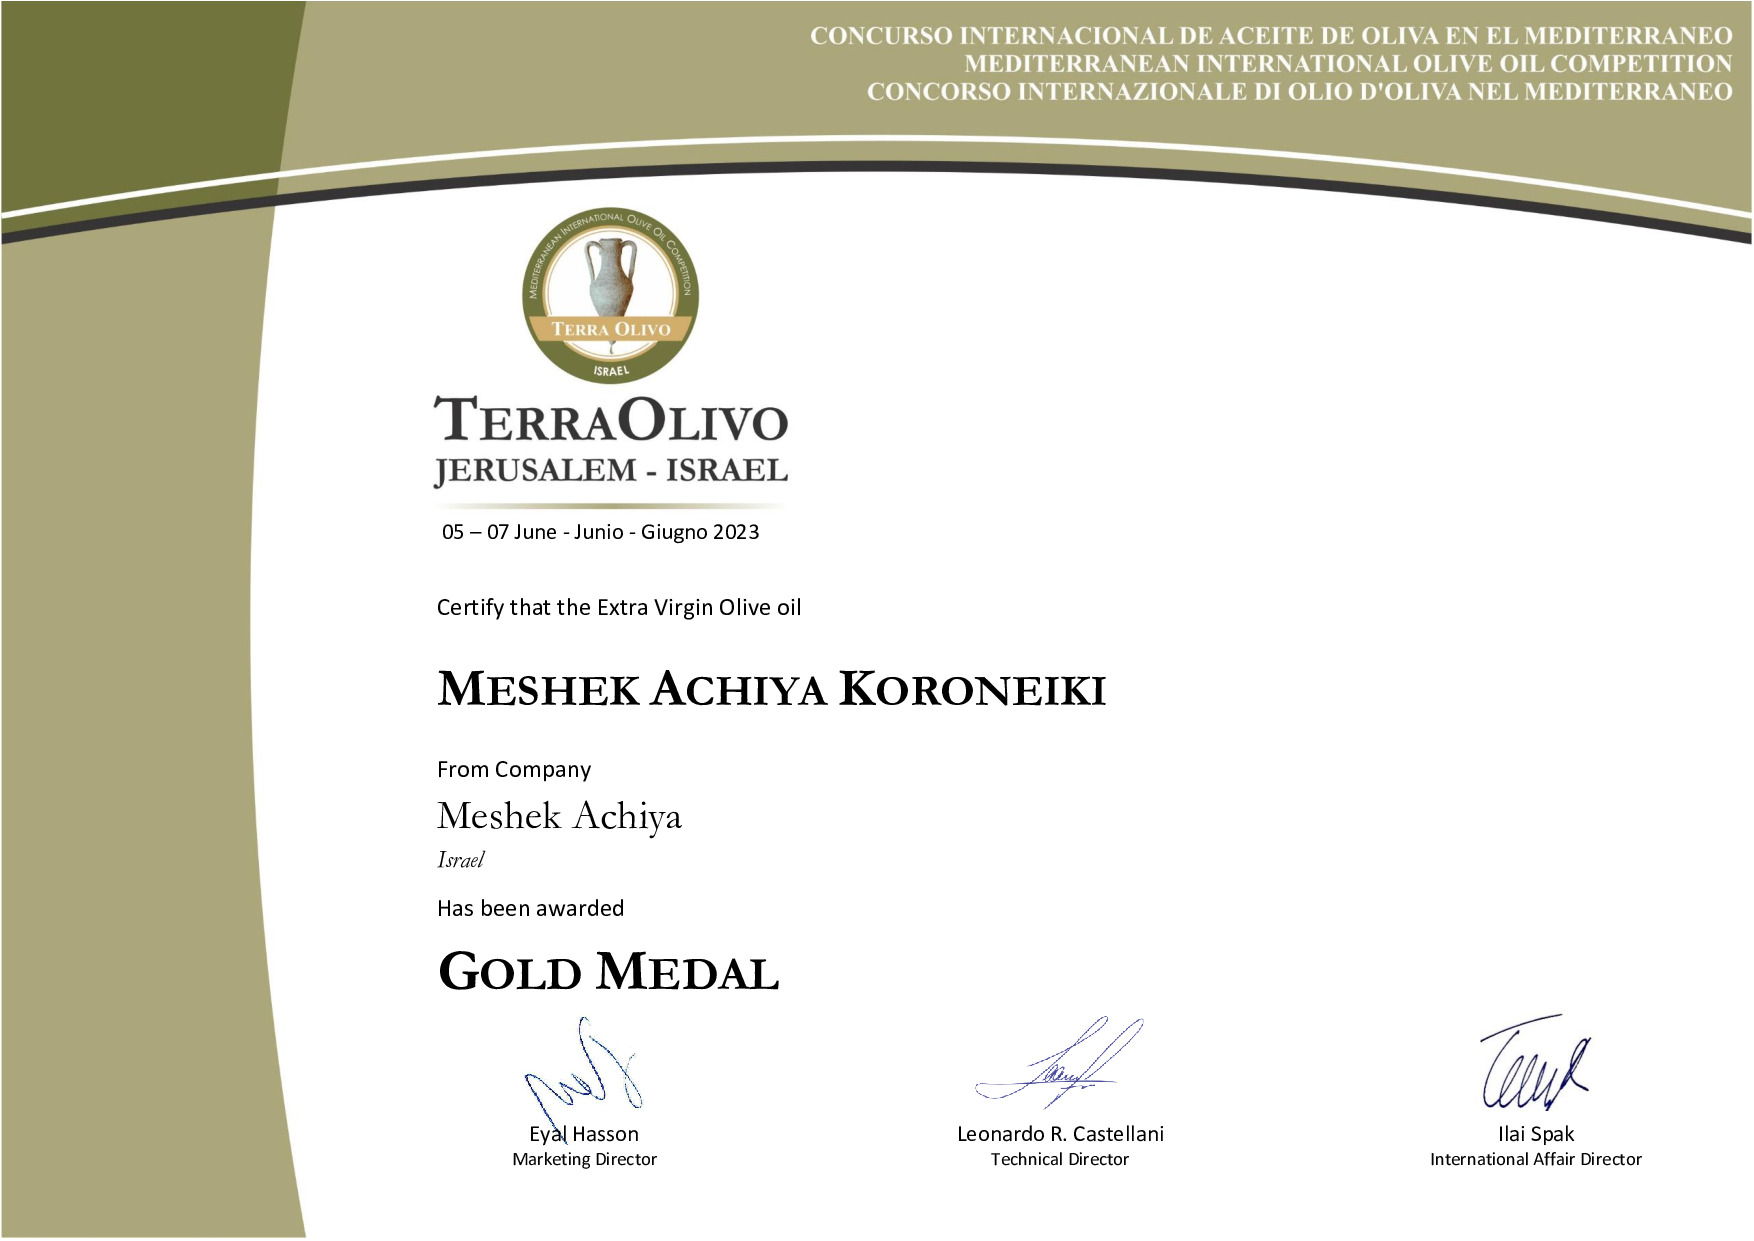 Meshek_Achiya_Koroneiki_Gold_Medal